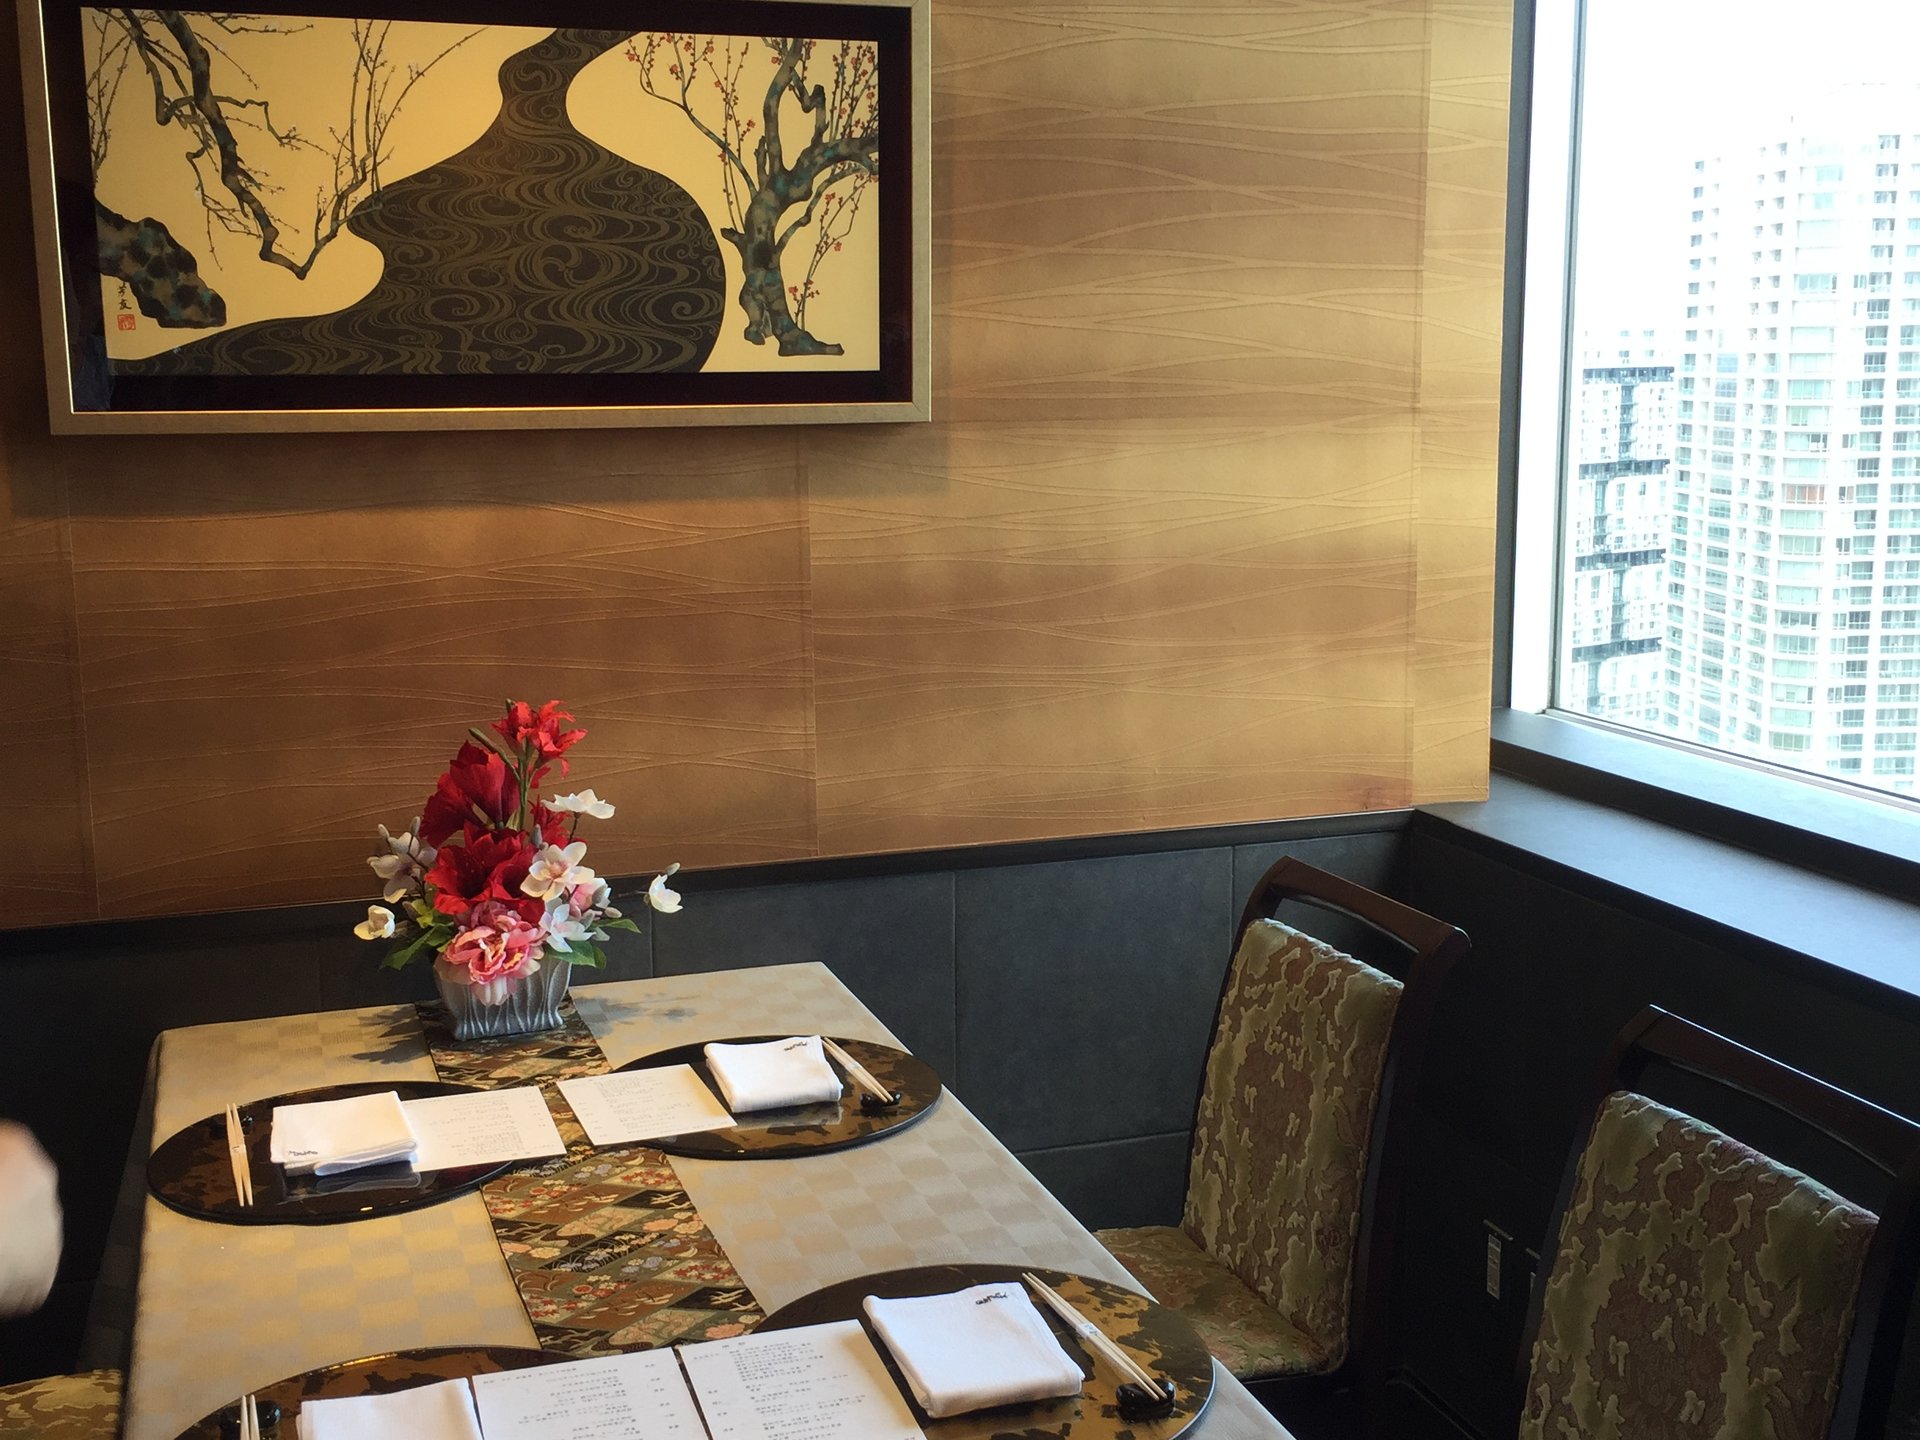 スカイビル28階から横浜を一望できる日本料理店 横浜ほしのなる木で優雅ランチ